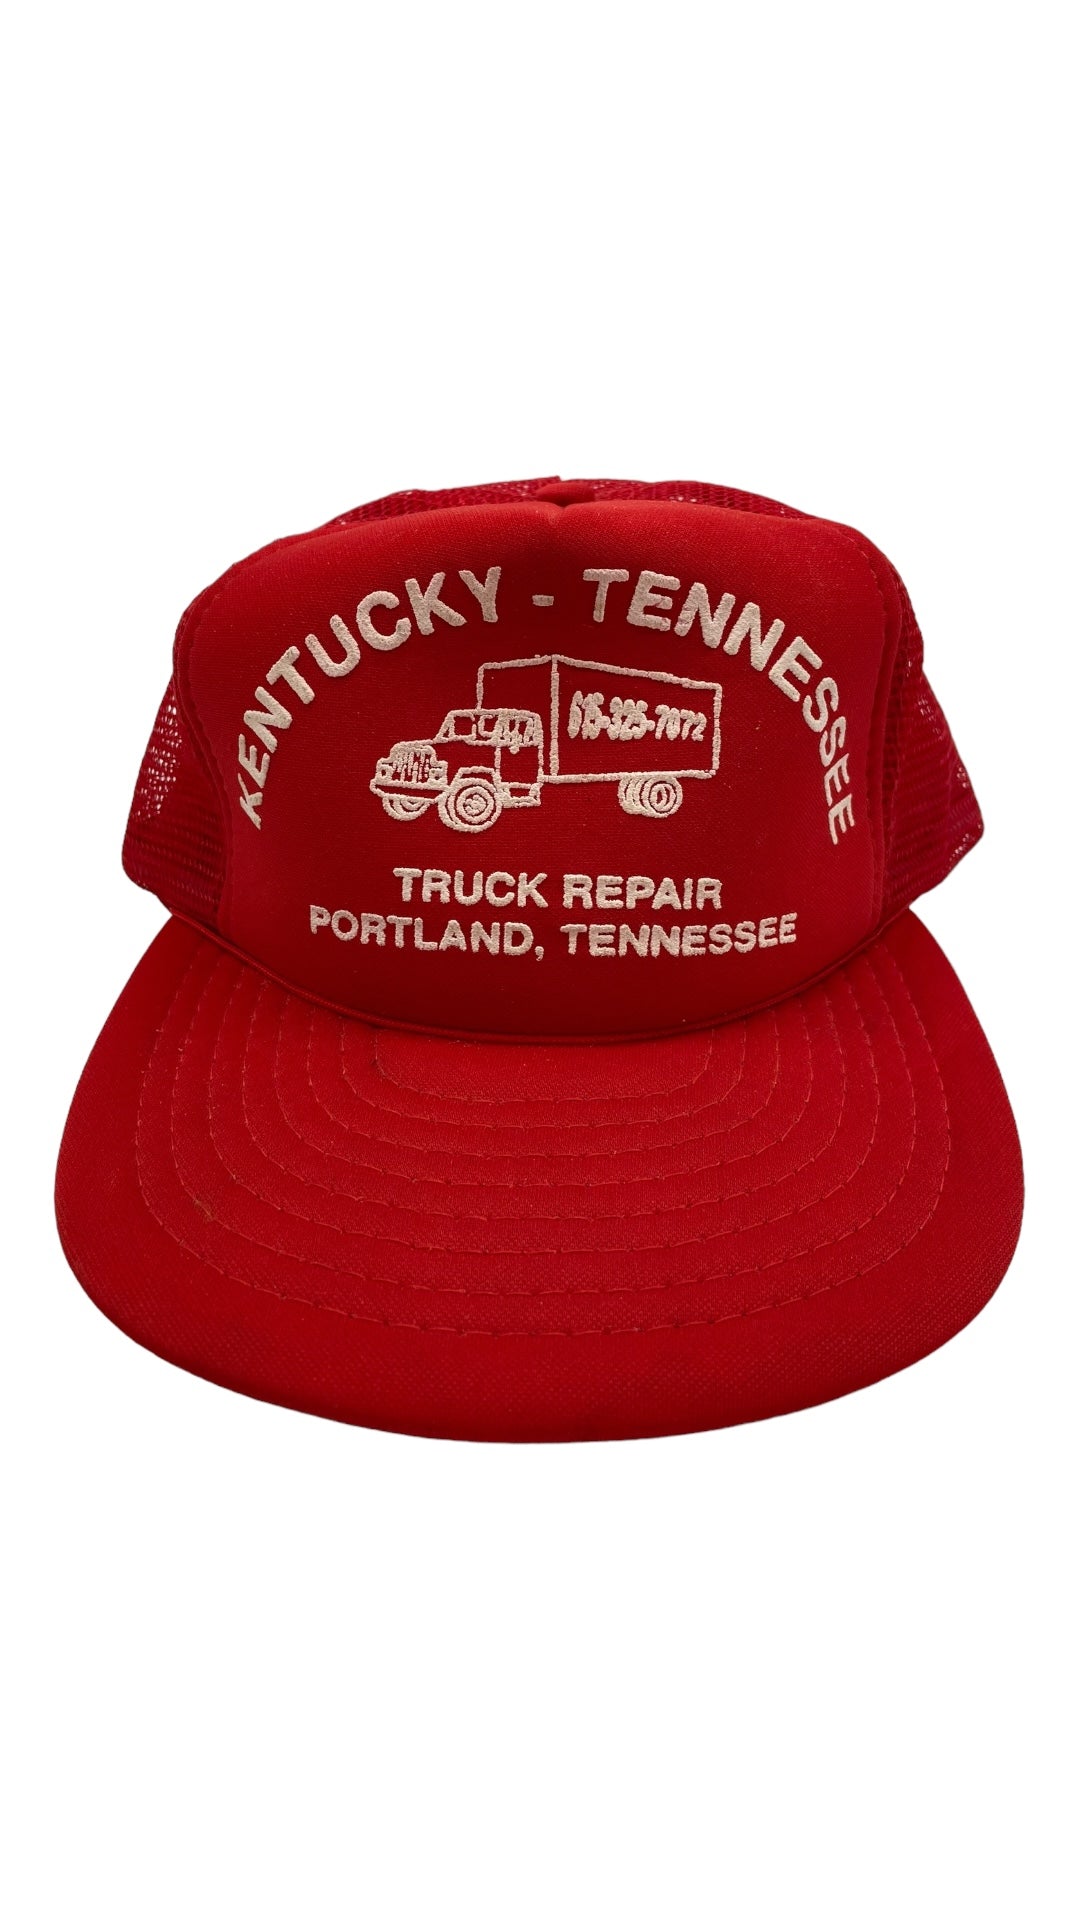 VTG Kentucky Tennessee Truck Repair Red Trucker Hat